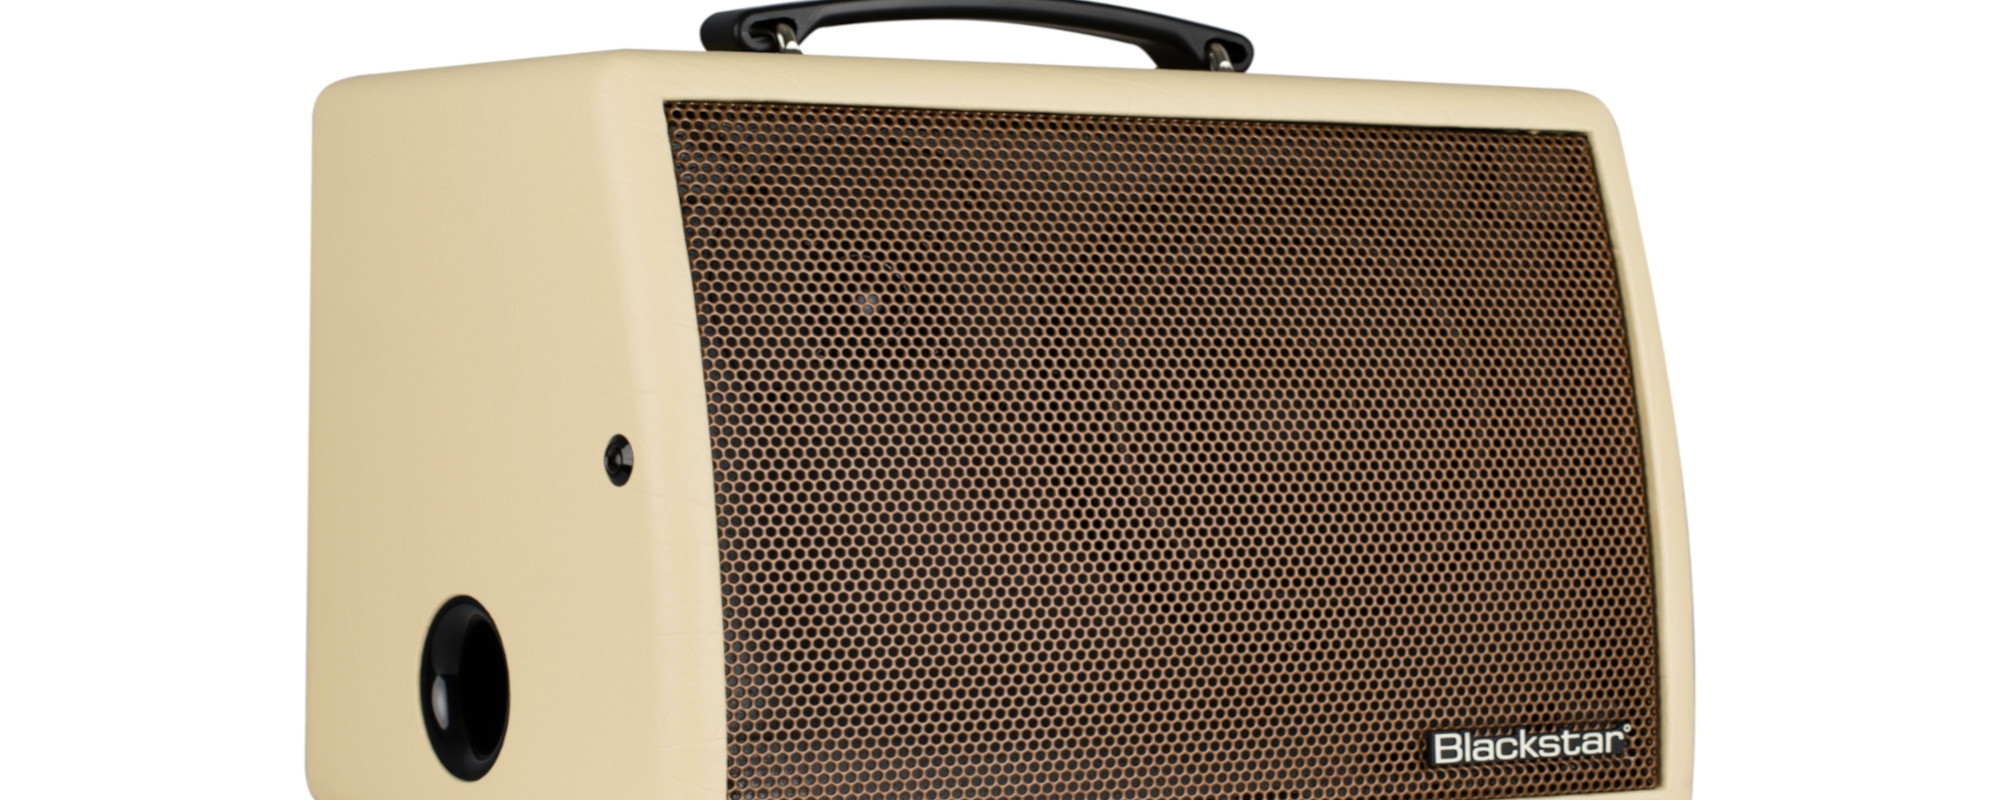 Gear Review: Blackstar Sonnet 60 Acoustic Amp Provides Big 